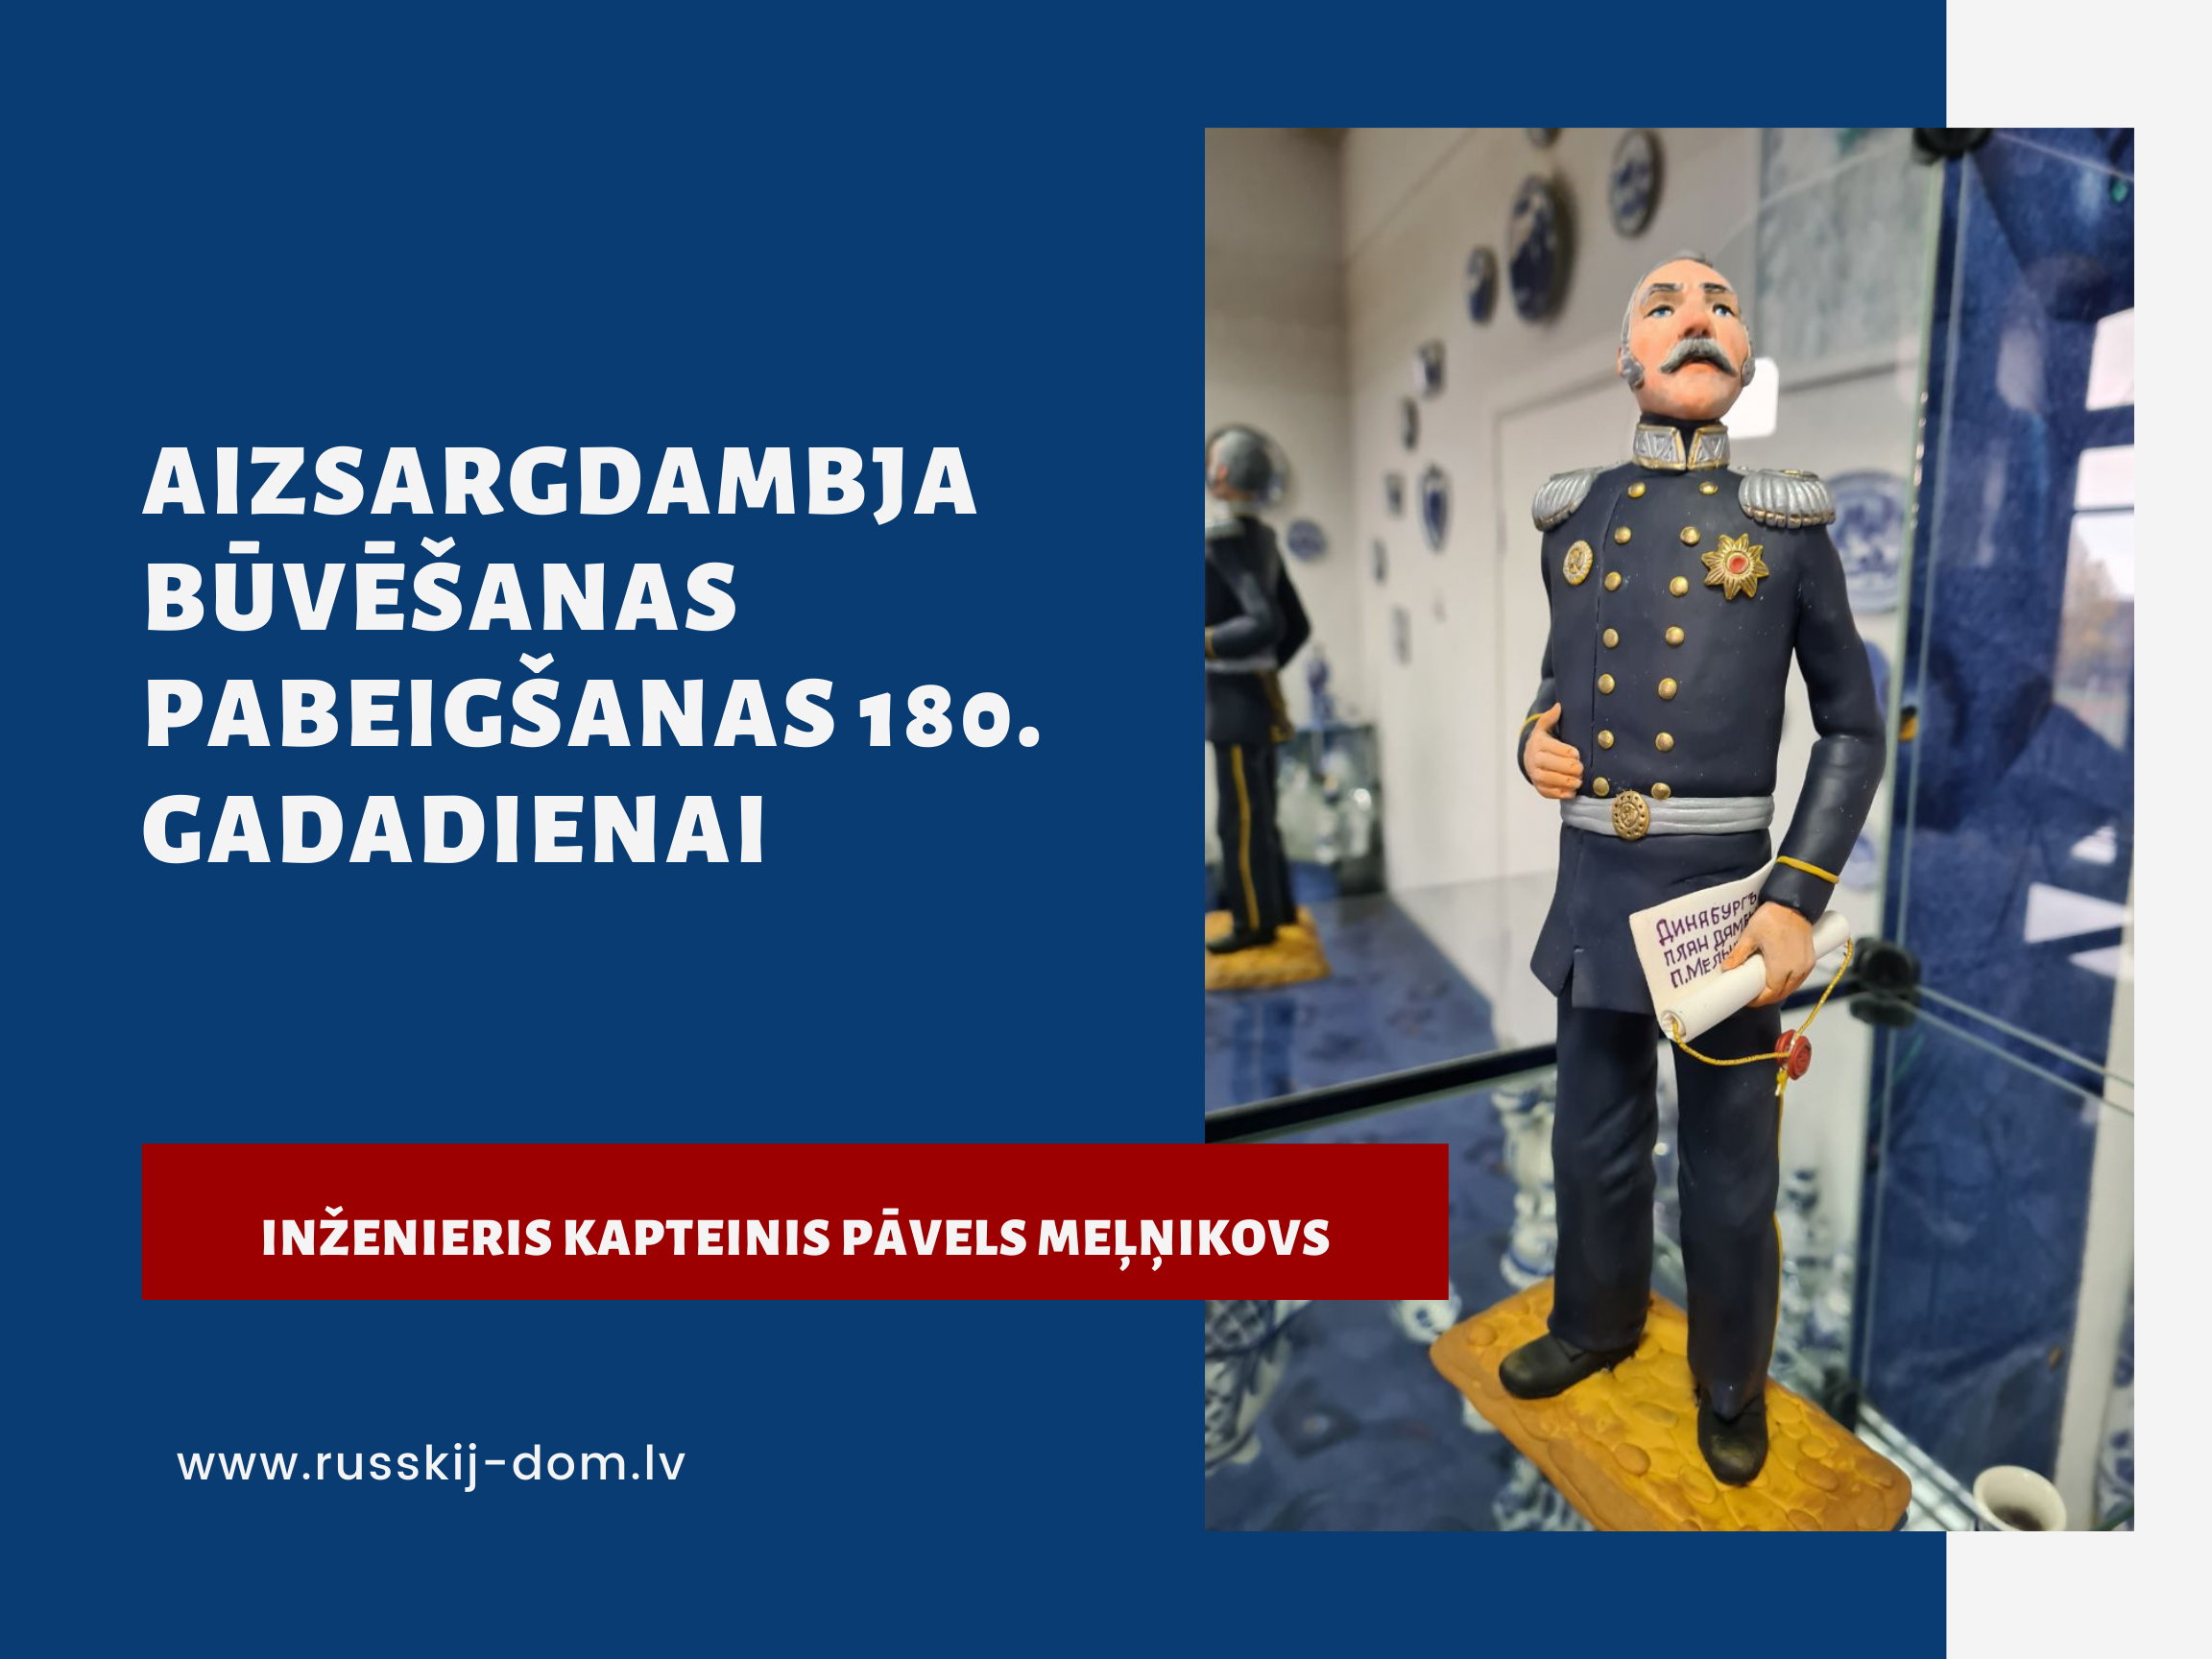 Iženiera kapteiņa Meļņikova aizsardzības dambja būvniecības pabeigšanas 180. gadadienai